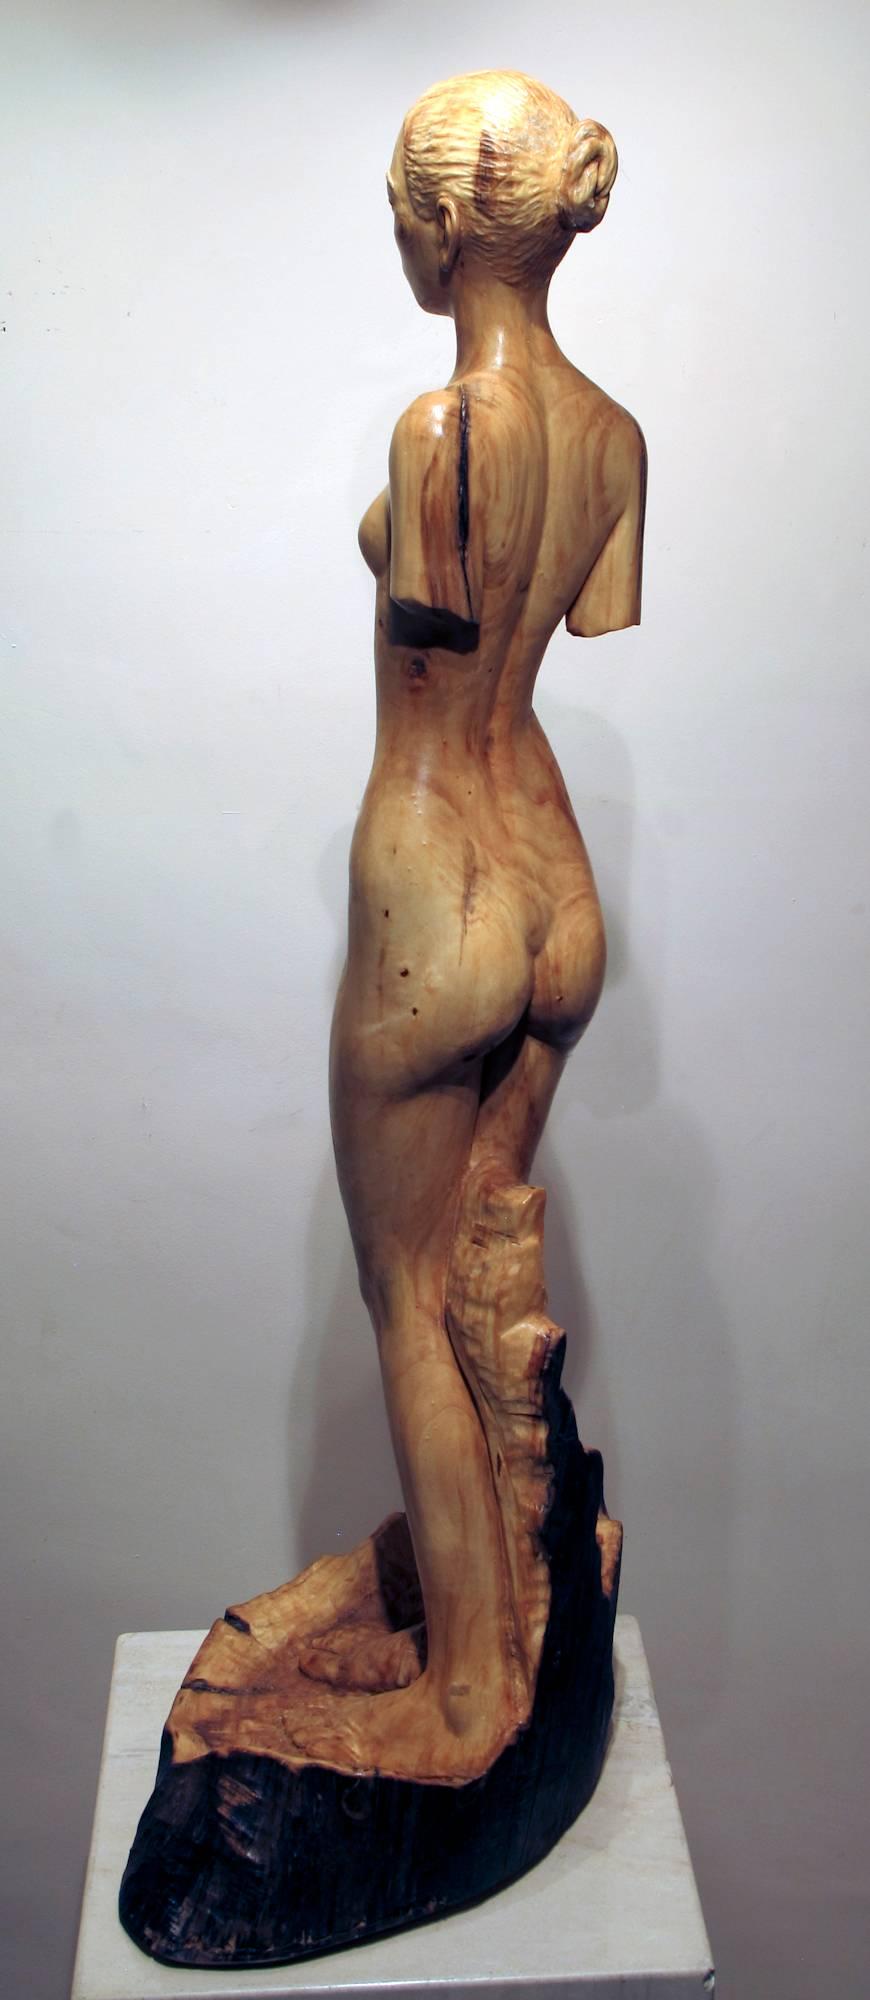 natale wood nude